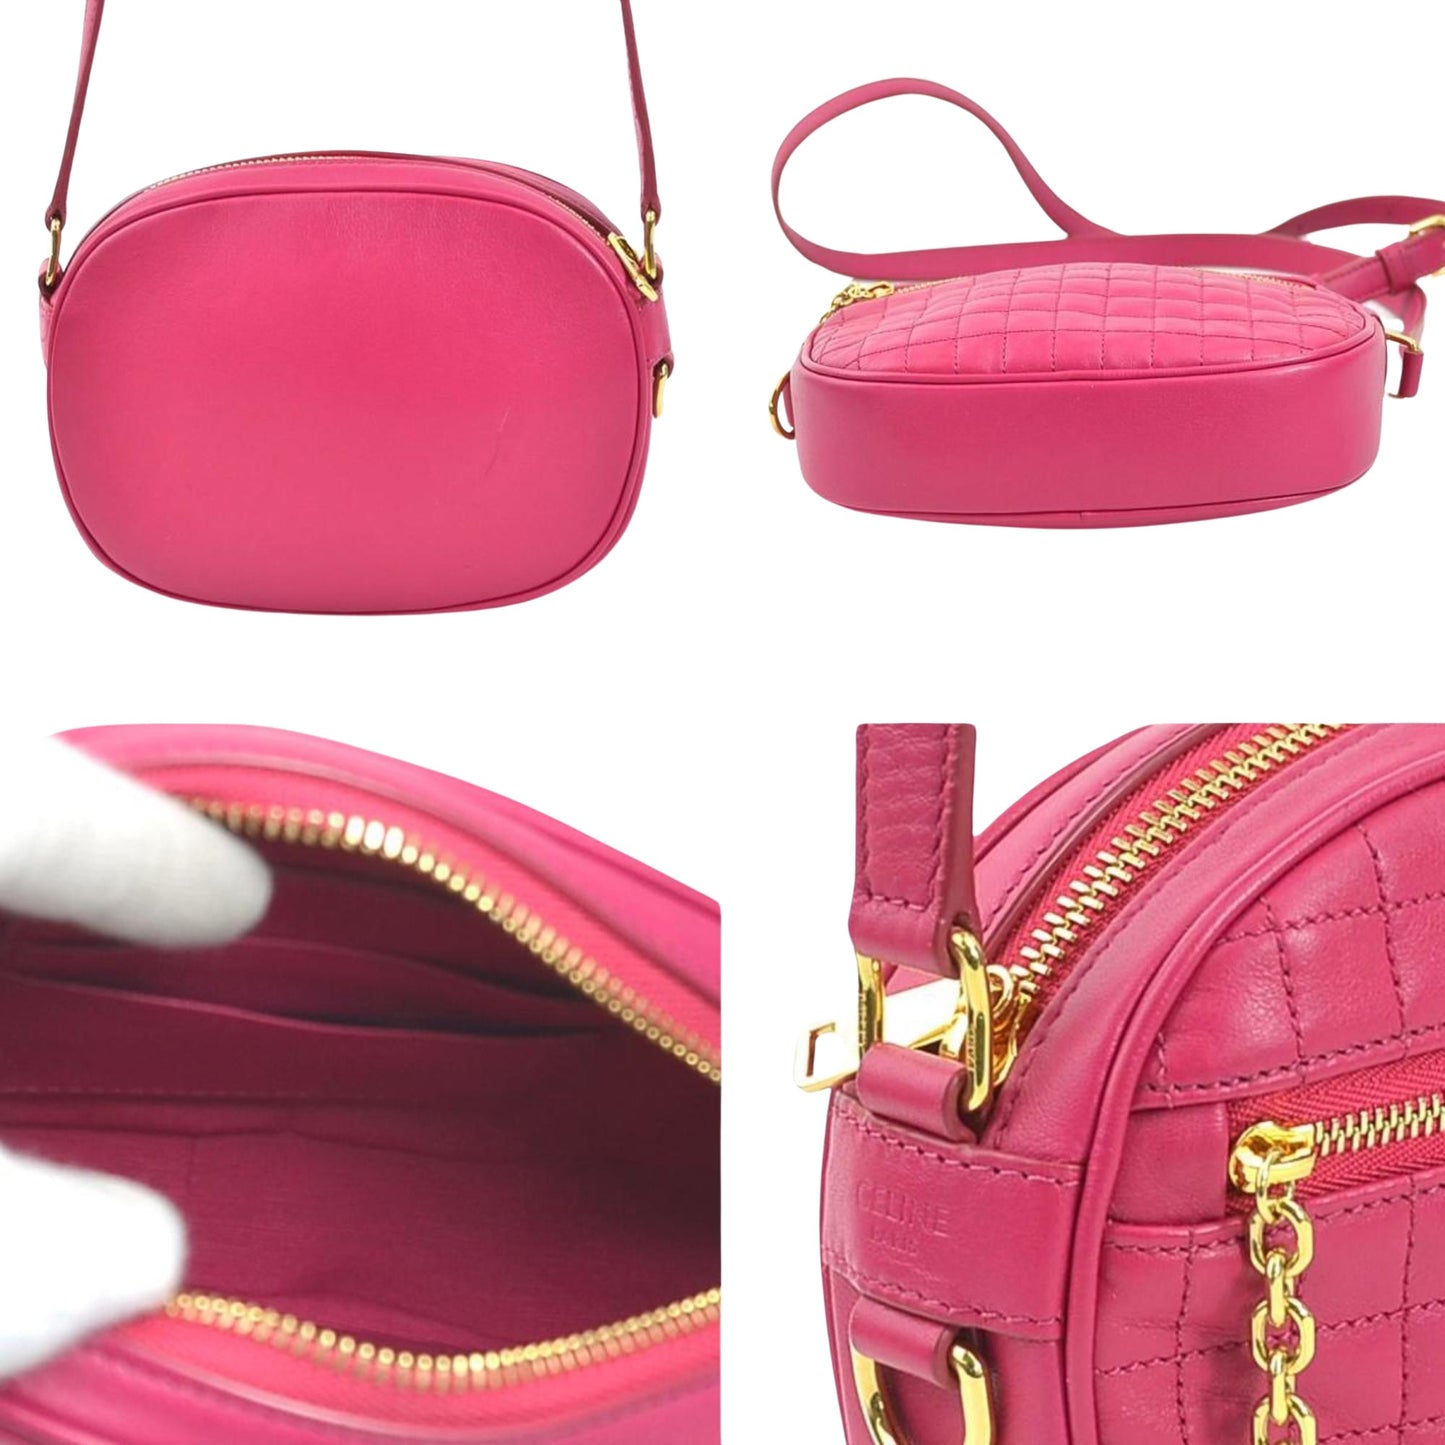 Celine Women's Pink Leather Shoulder Bag by Celine in Pink